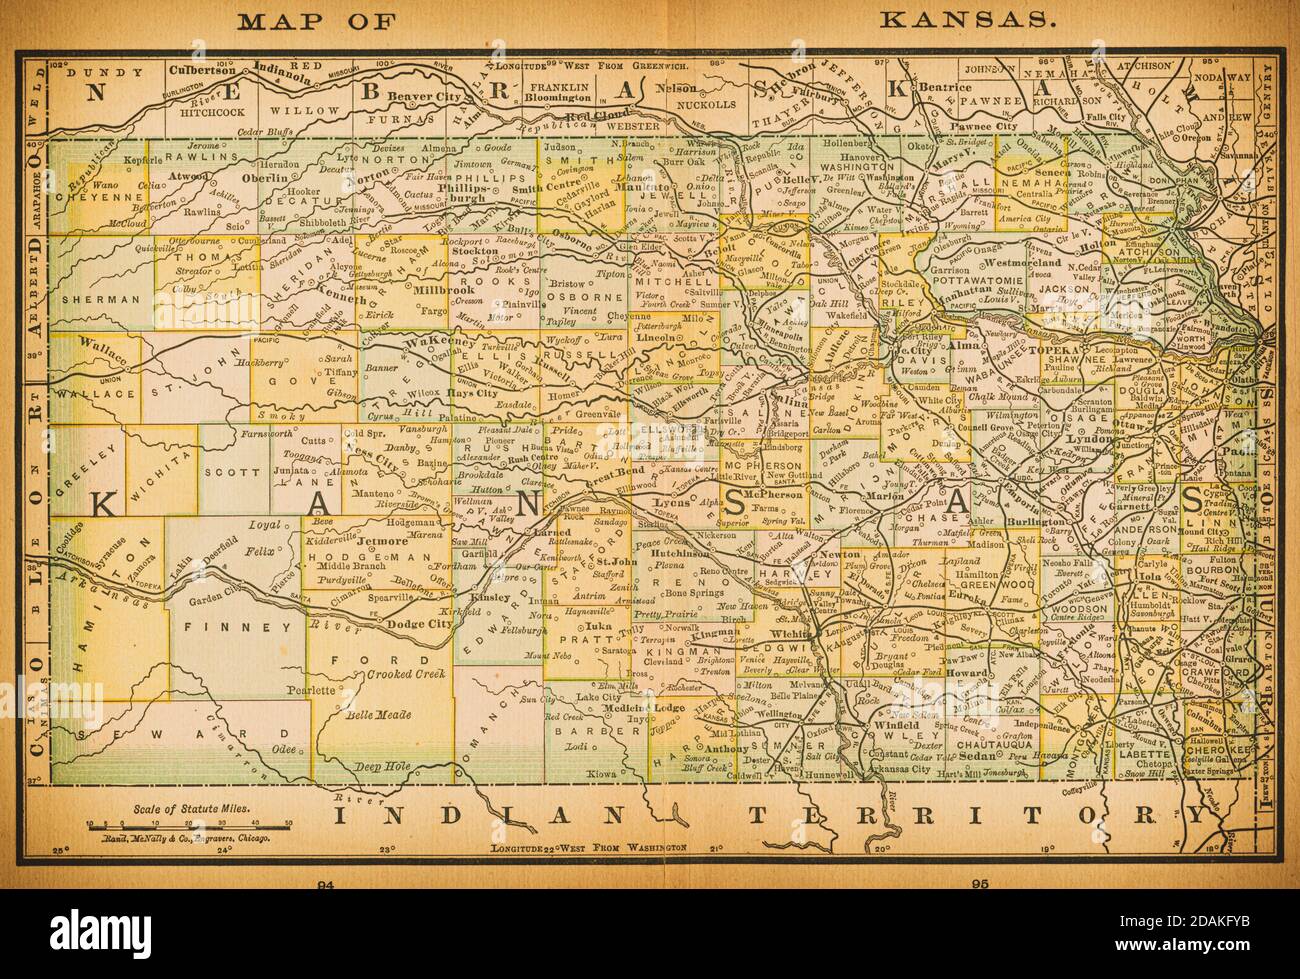 Karte von Kansas aus dem 19. Jahrhundert. Veröffentlicht im New Dollar Atlas of the United States and Dominion of Canada. (Rand McNally & Co's, Chicago, 1884). Stockfoto